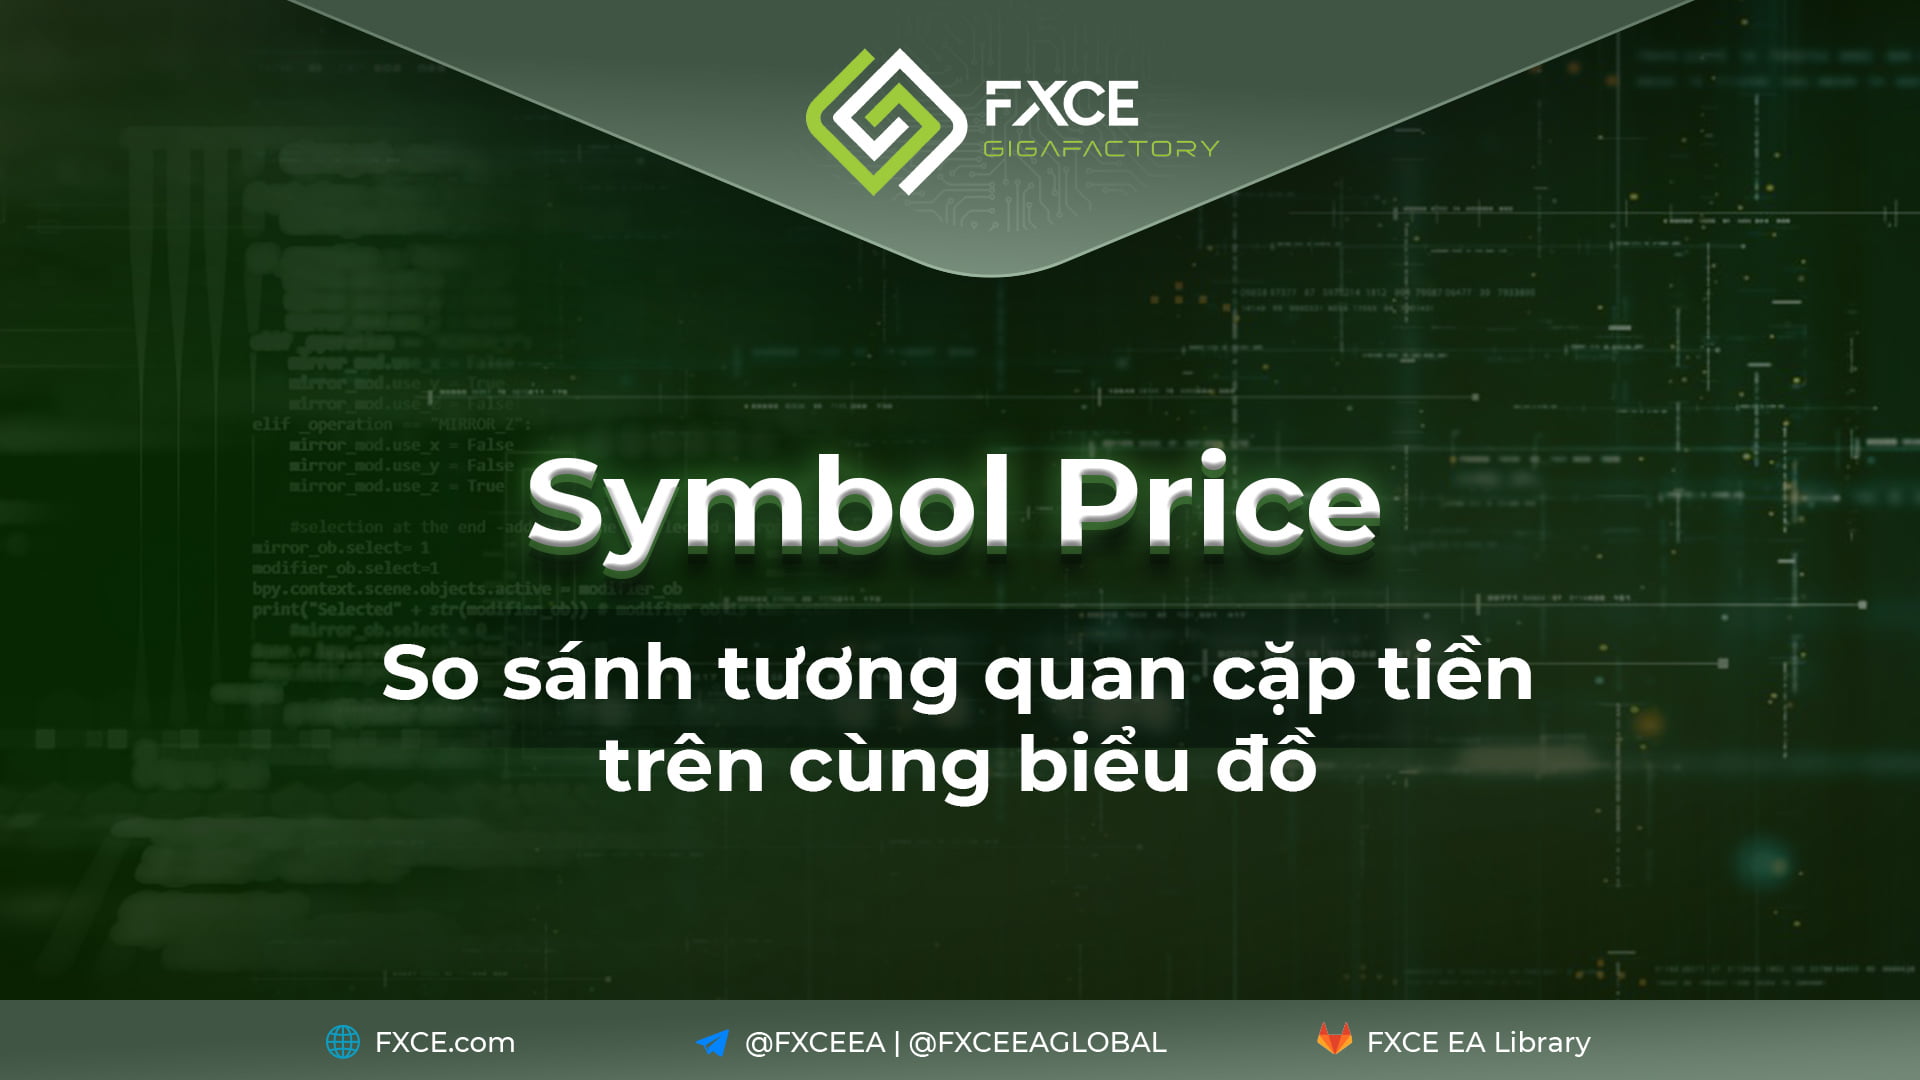 Symbol Price - So sánh tương quan cặp tiền trên cùng biểu đồ